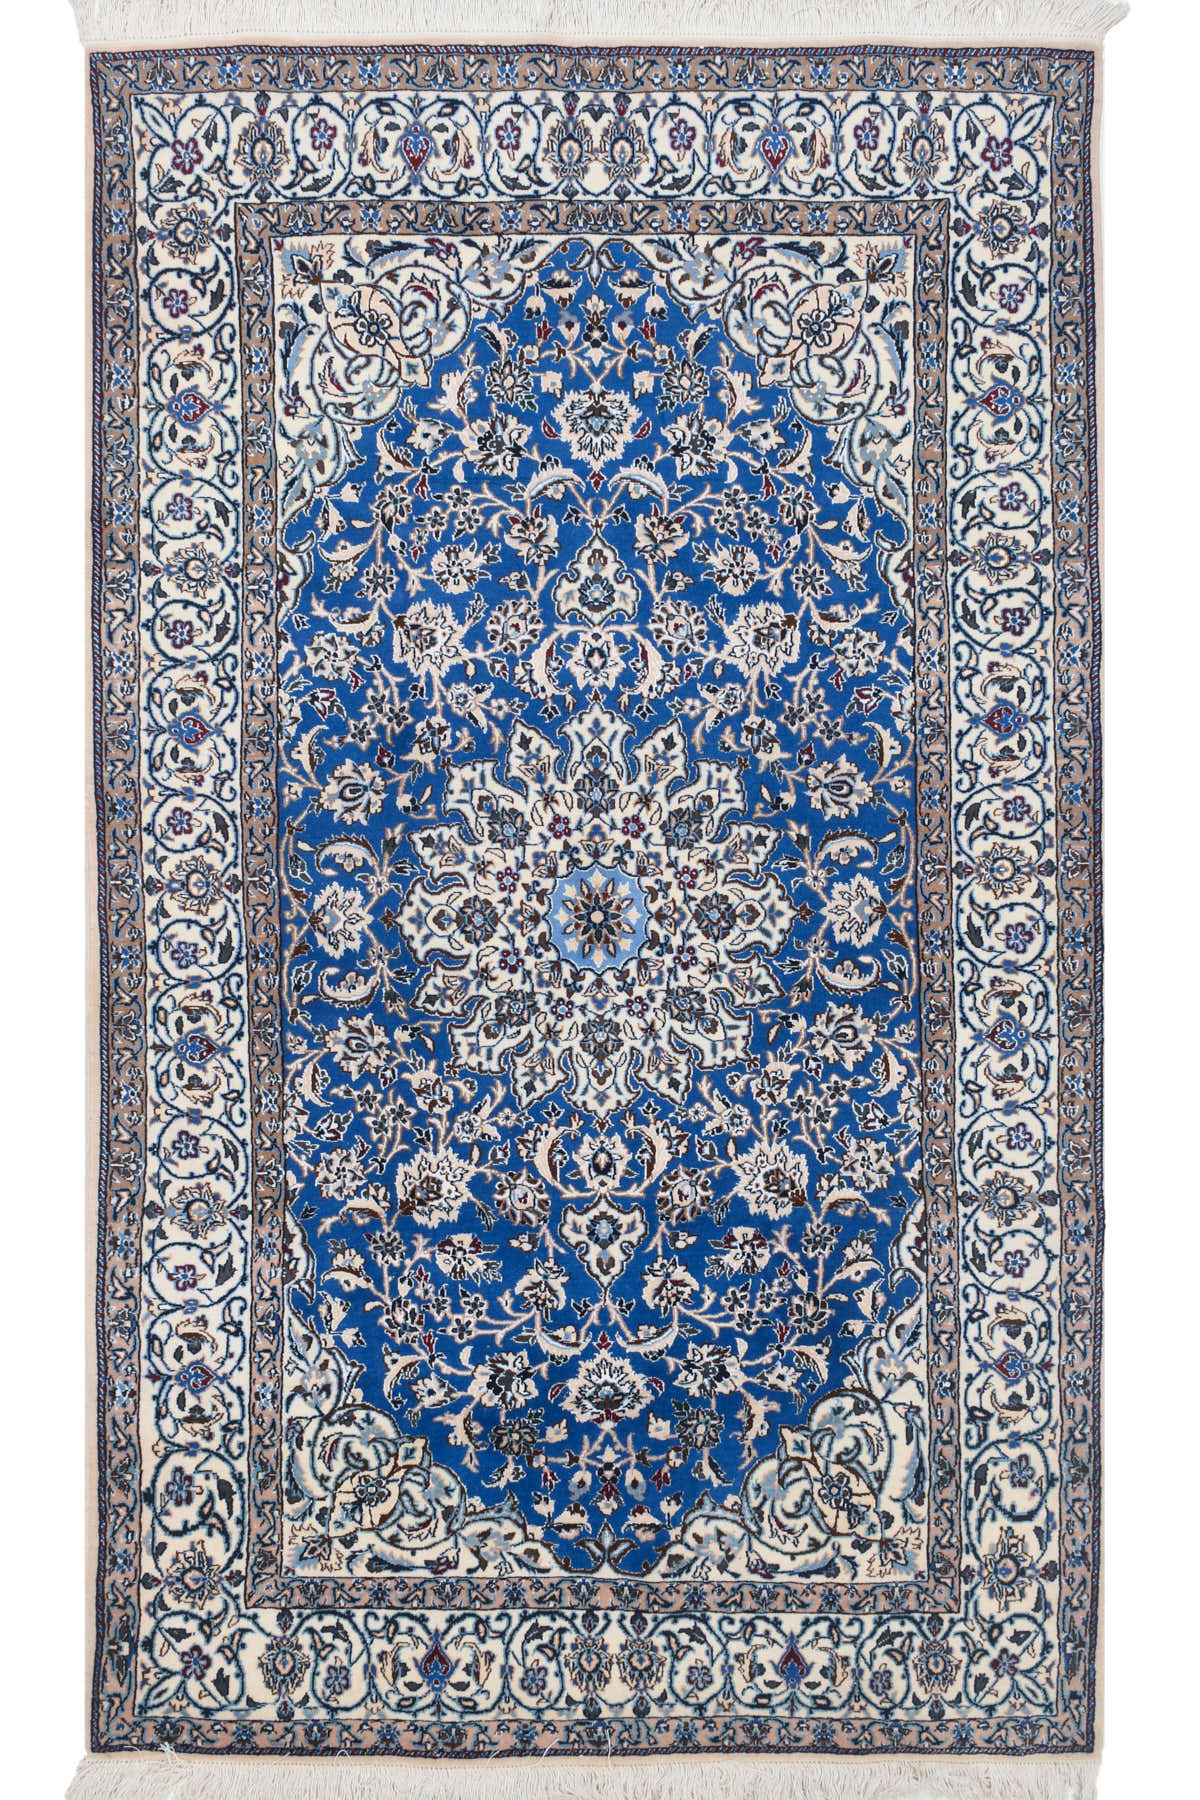 שטיח נעין שישלה 03 | שטיח פרסי כחול